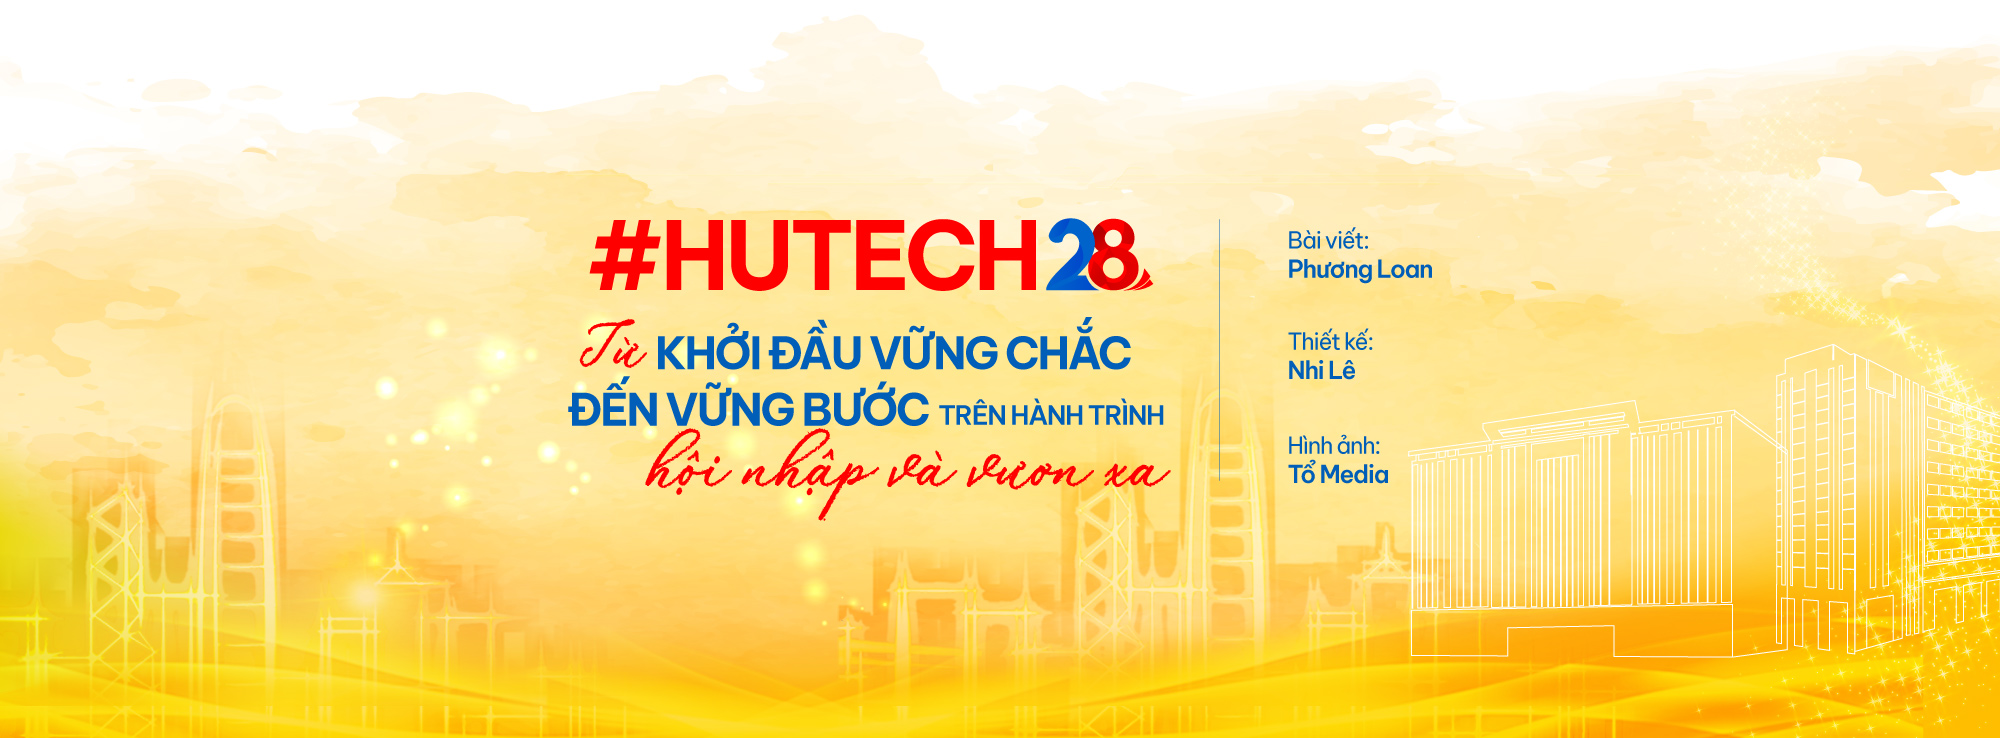 #HUTECH28: Từ khởi đầu vững chắc đến vững bước trên hành trình hội nhập và vươn xa 177